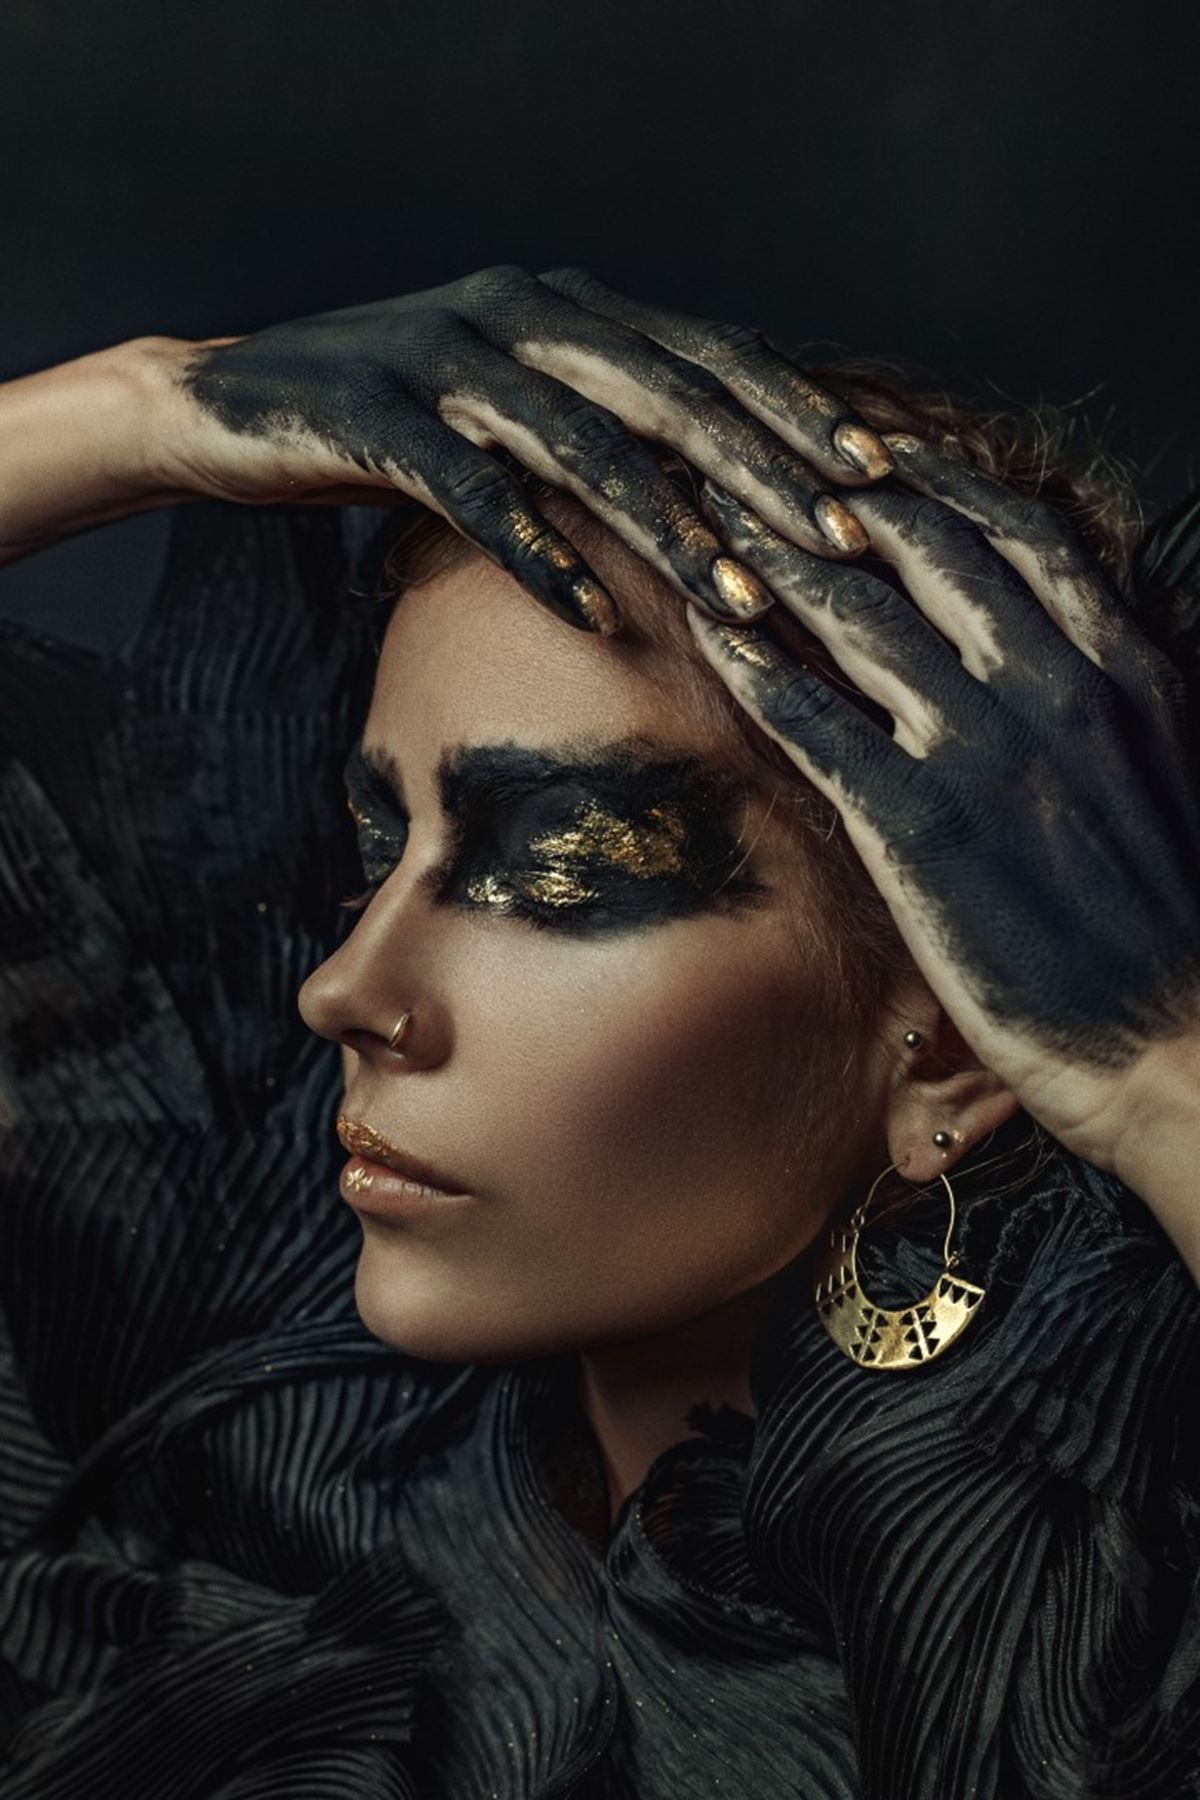 Gold & Black Face Makeup , Altın & Siyah Yüz Makyajı Kanvas Tablo